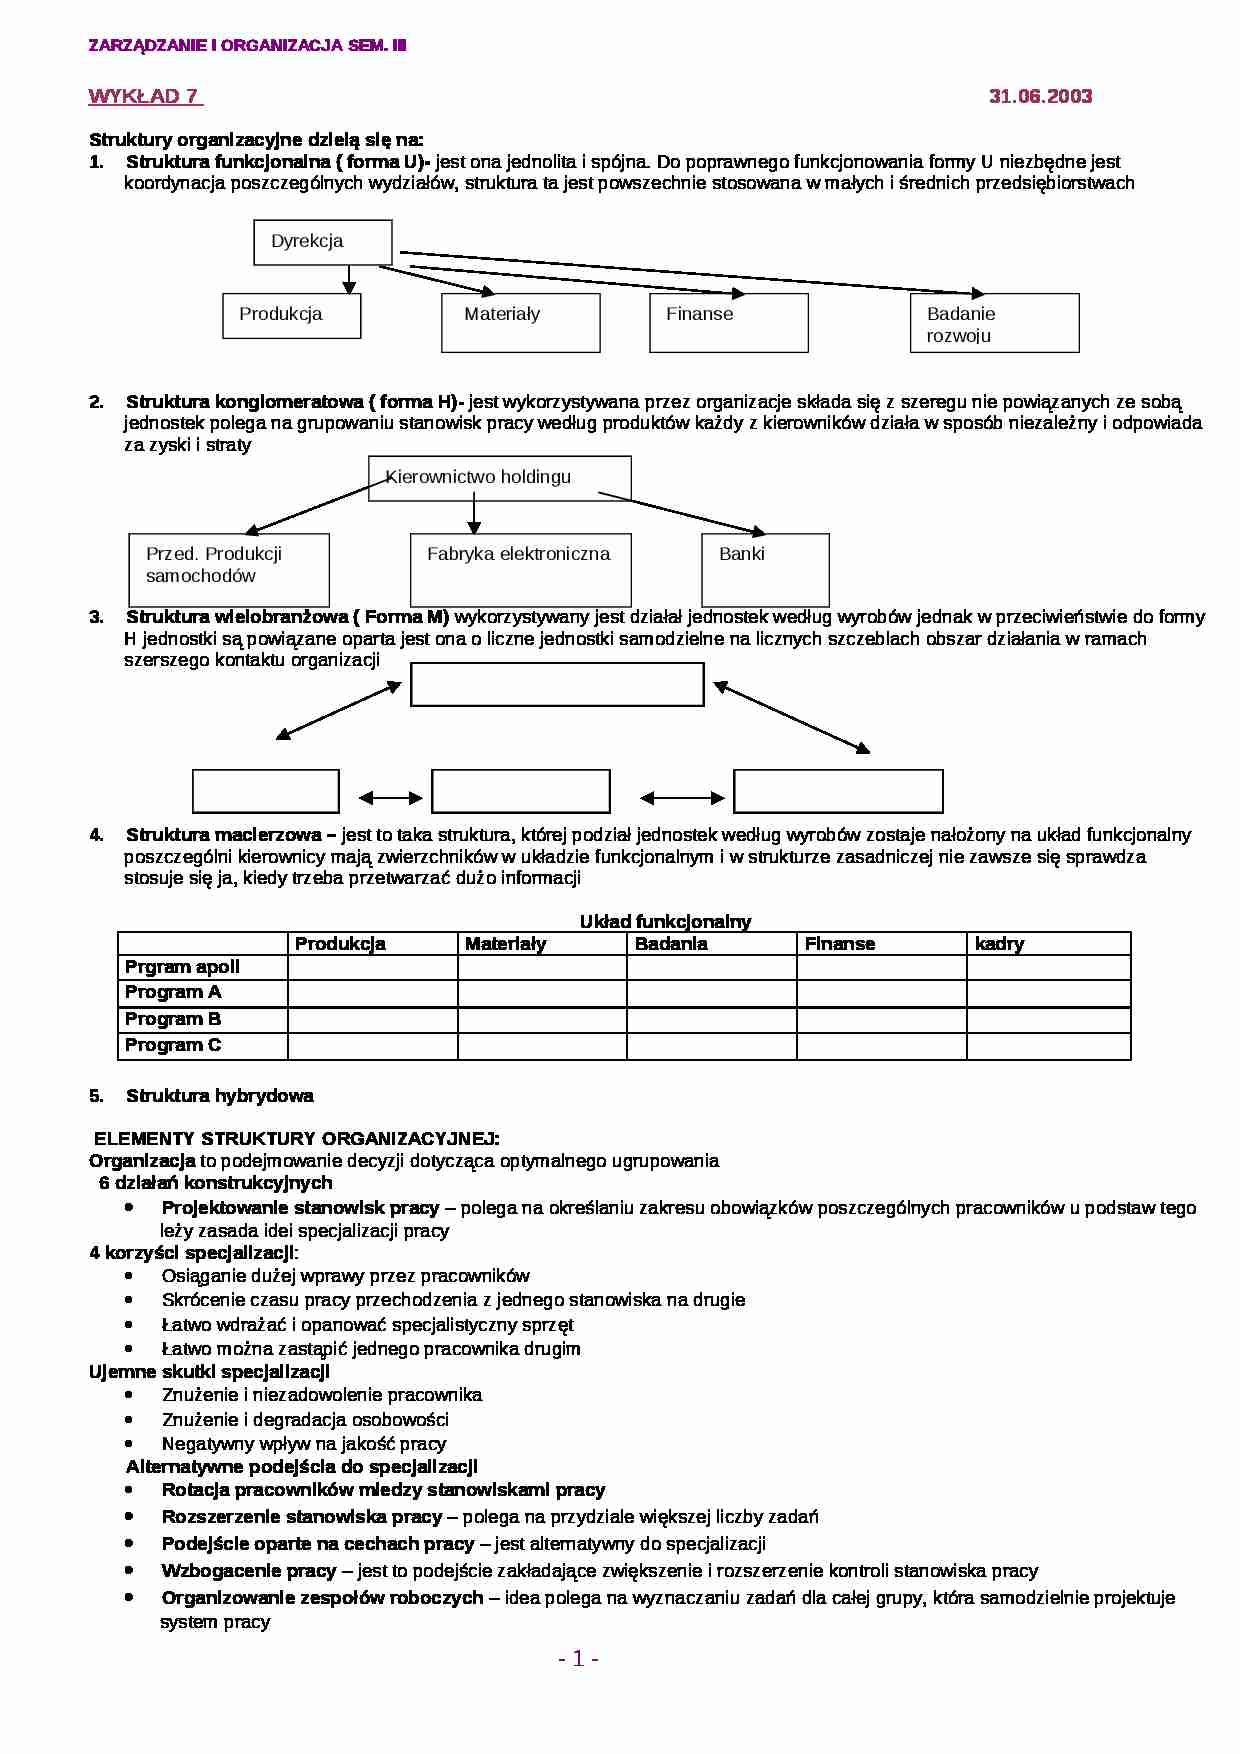 Typologia struktur organizacyjnych  - strona 1